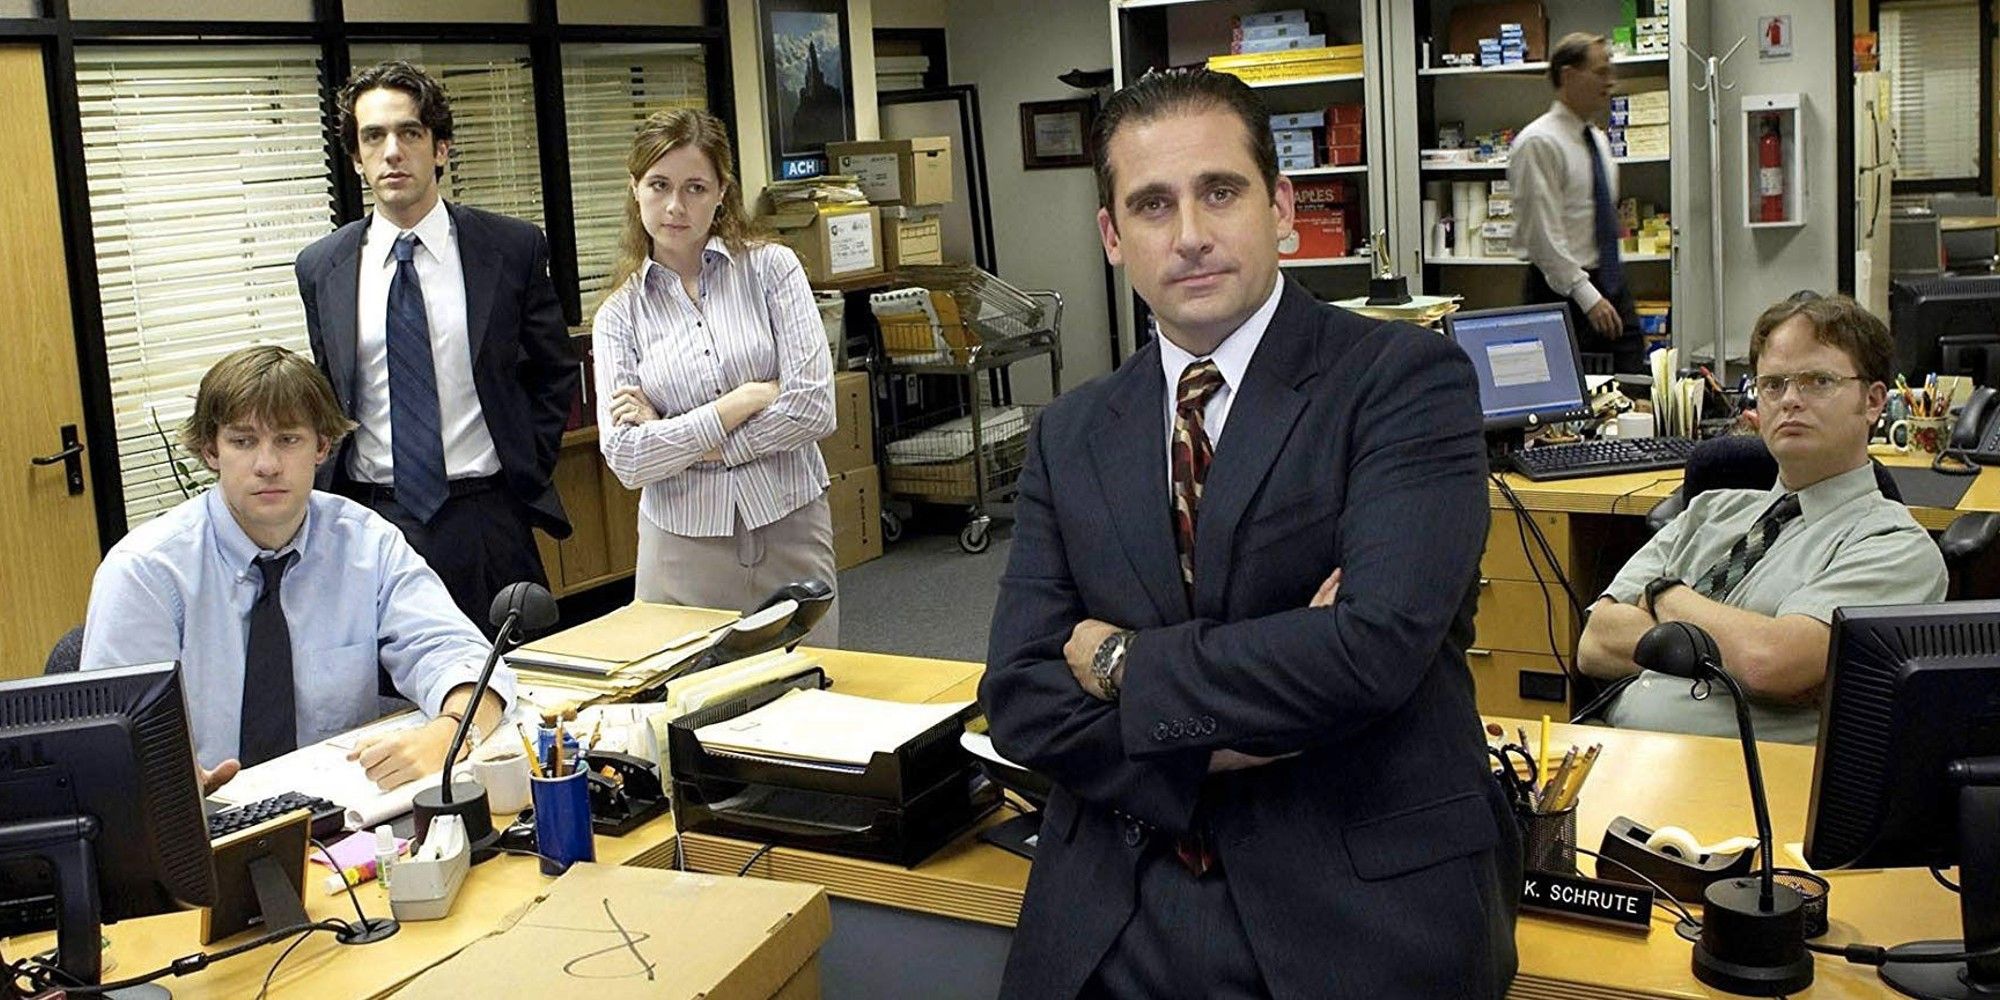 Le casting de 'The Office (US)'